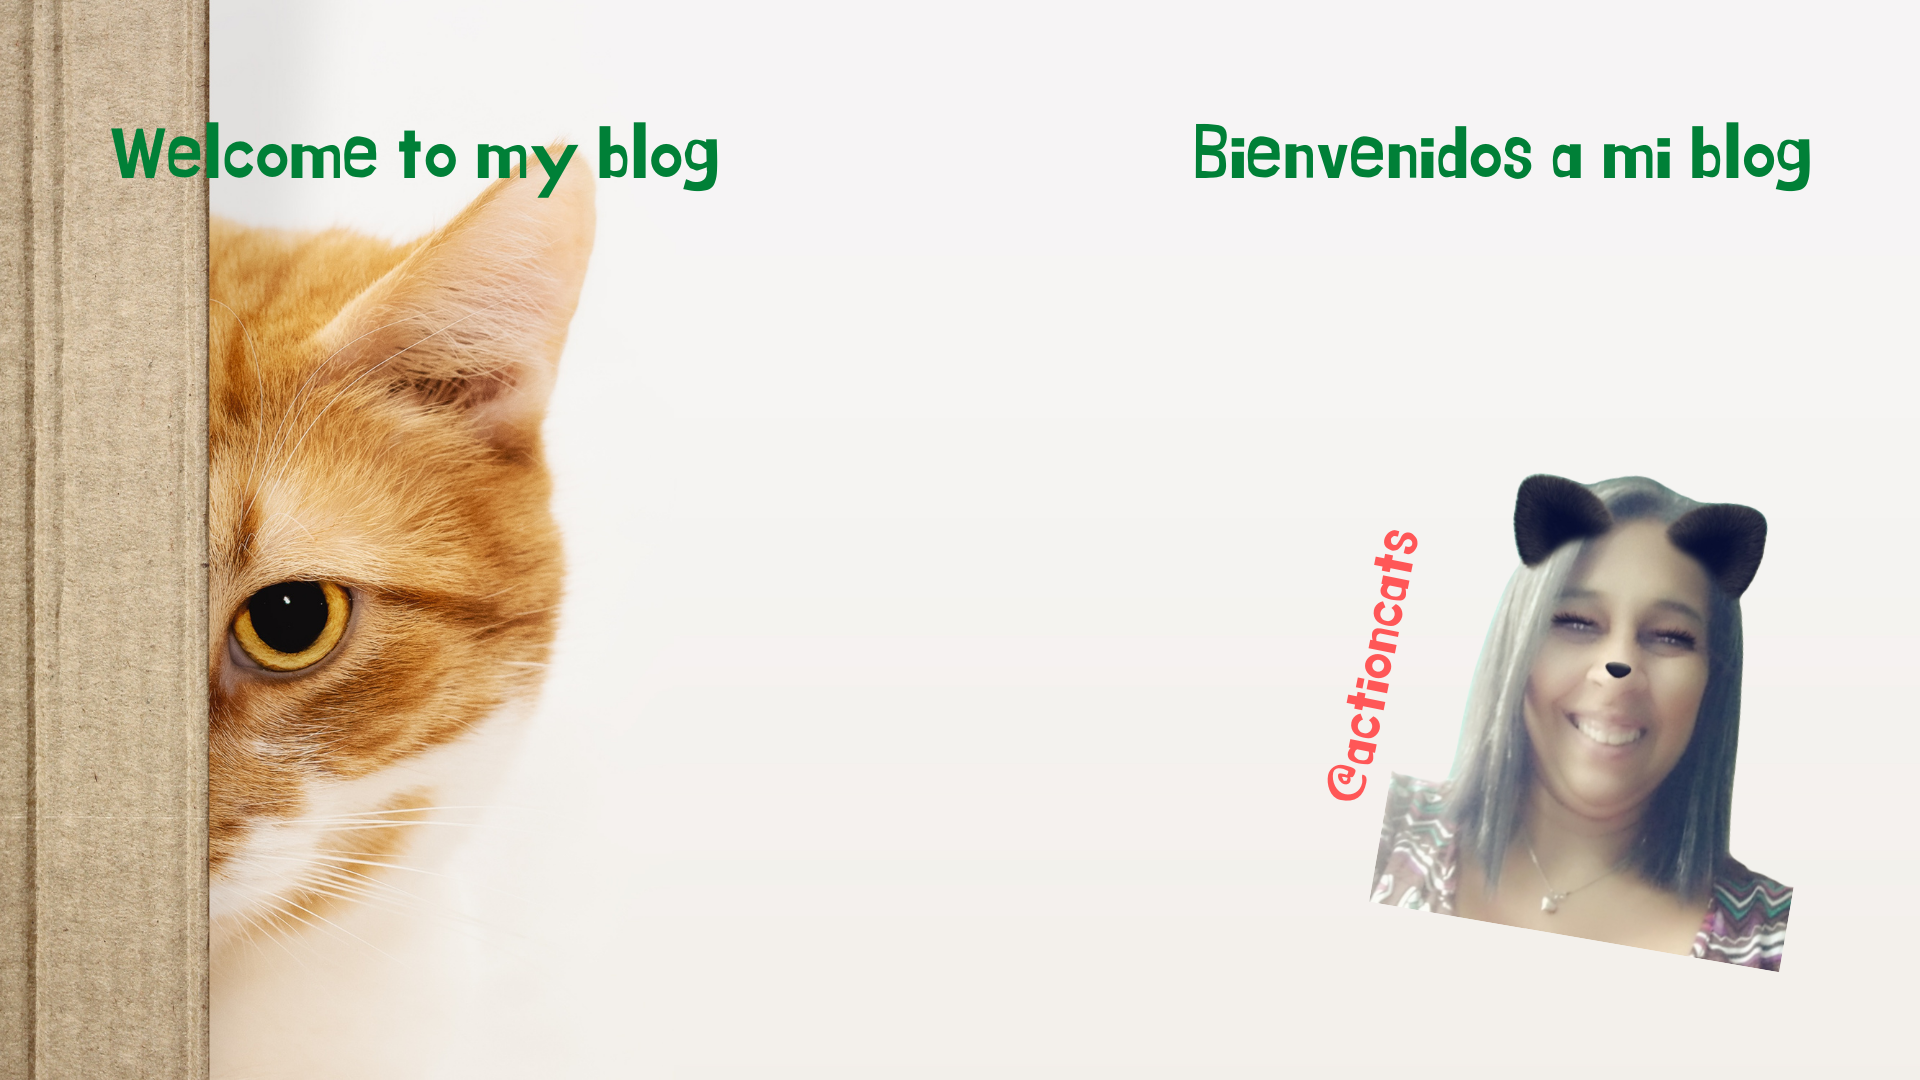 Bienvenidos a mi blog 2 idiomas nuevo.png